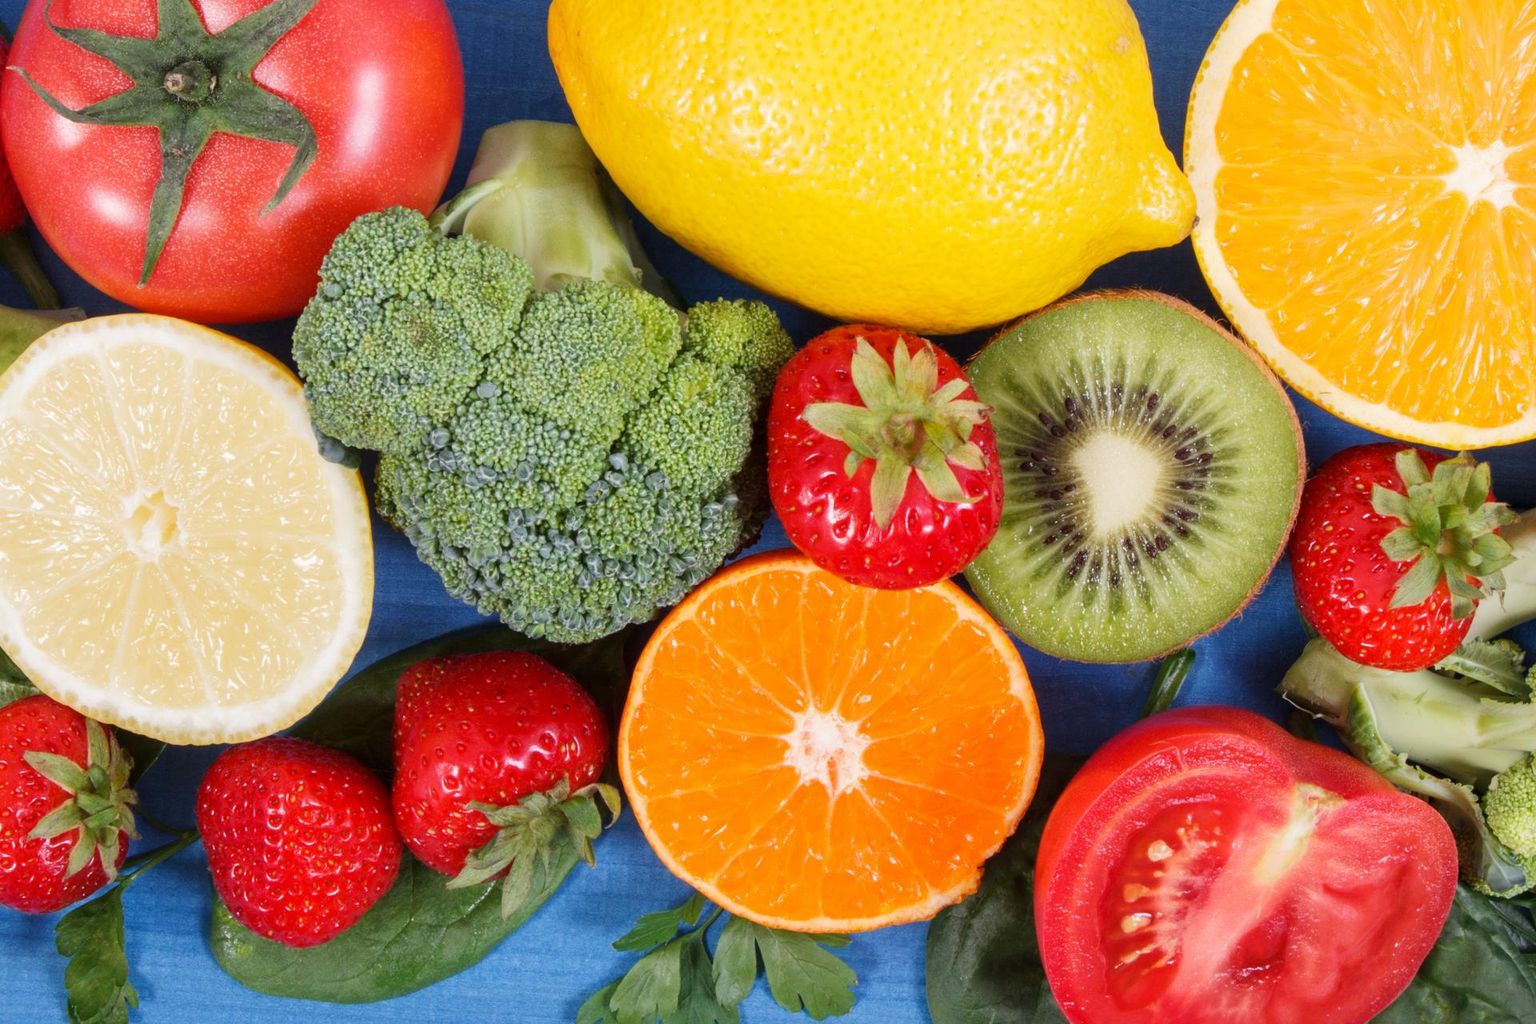 C-vitamiini leidub paljudes tihti tarbitavates puu- ja köögiviljades ning marjades.